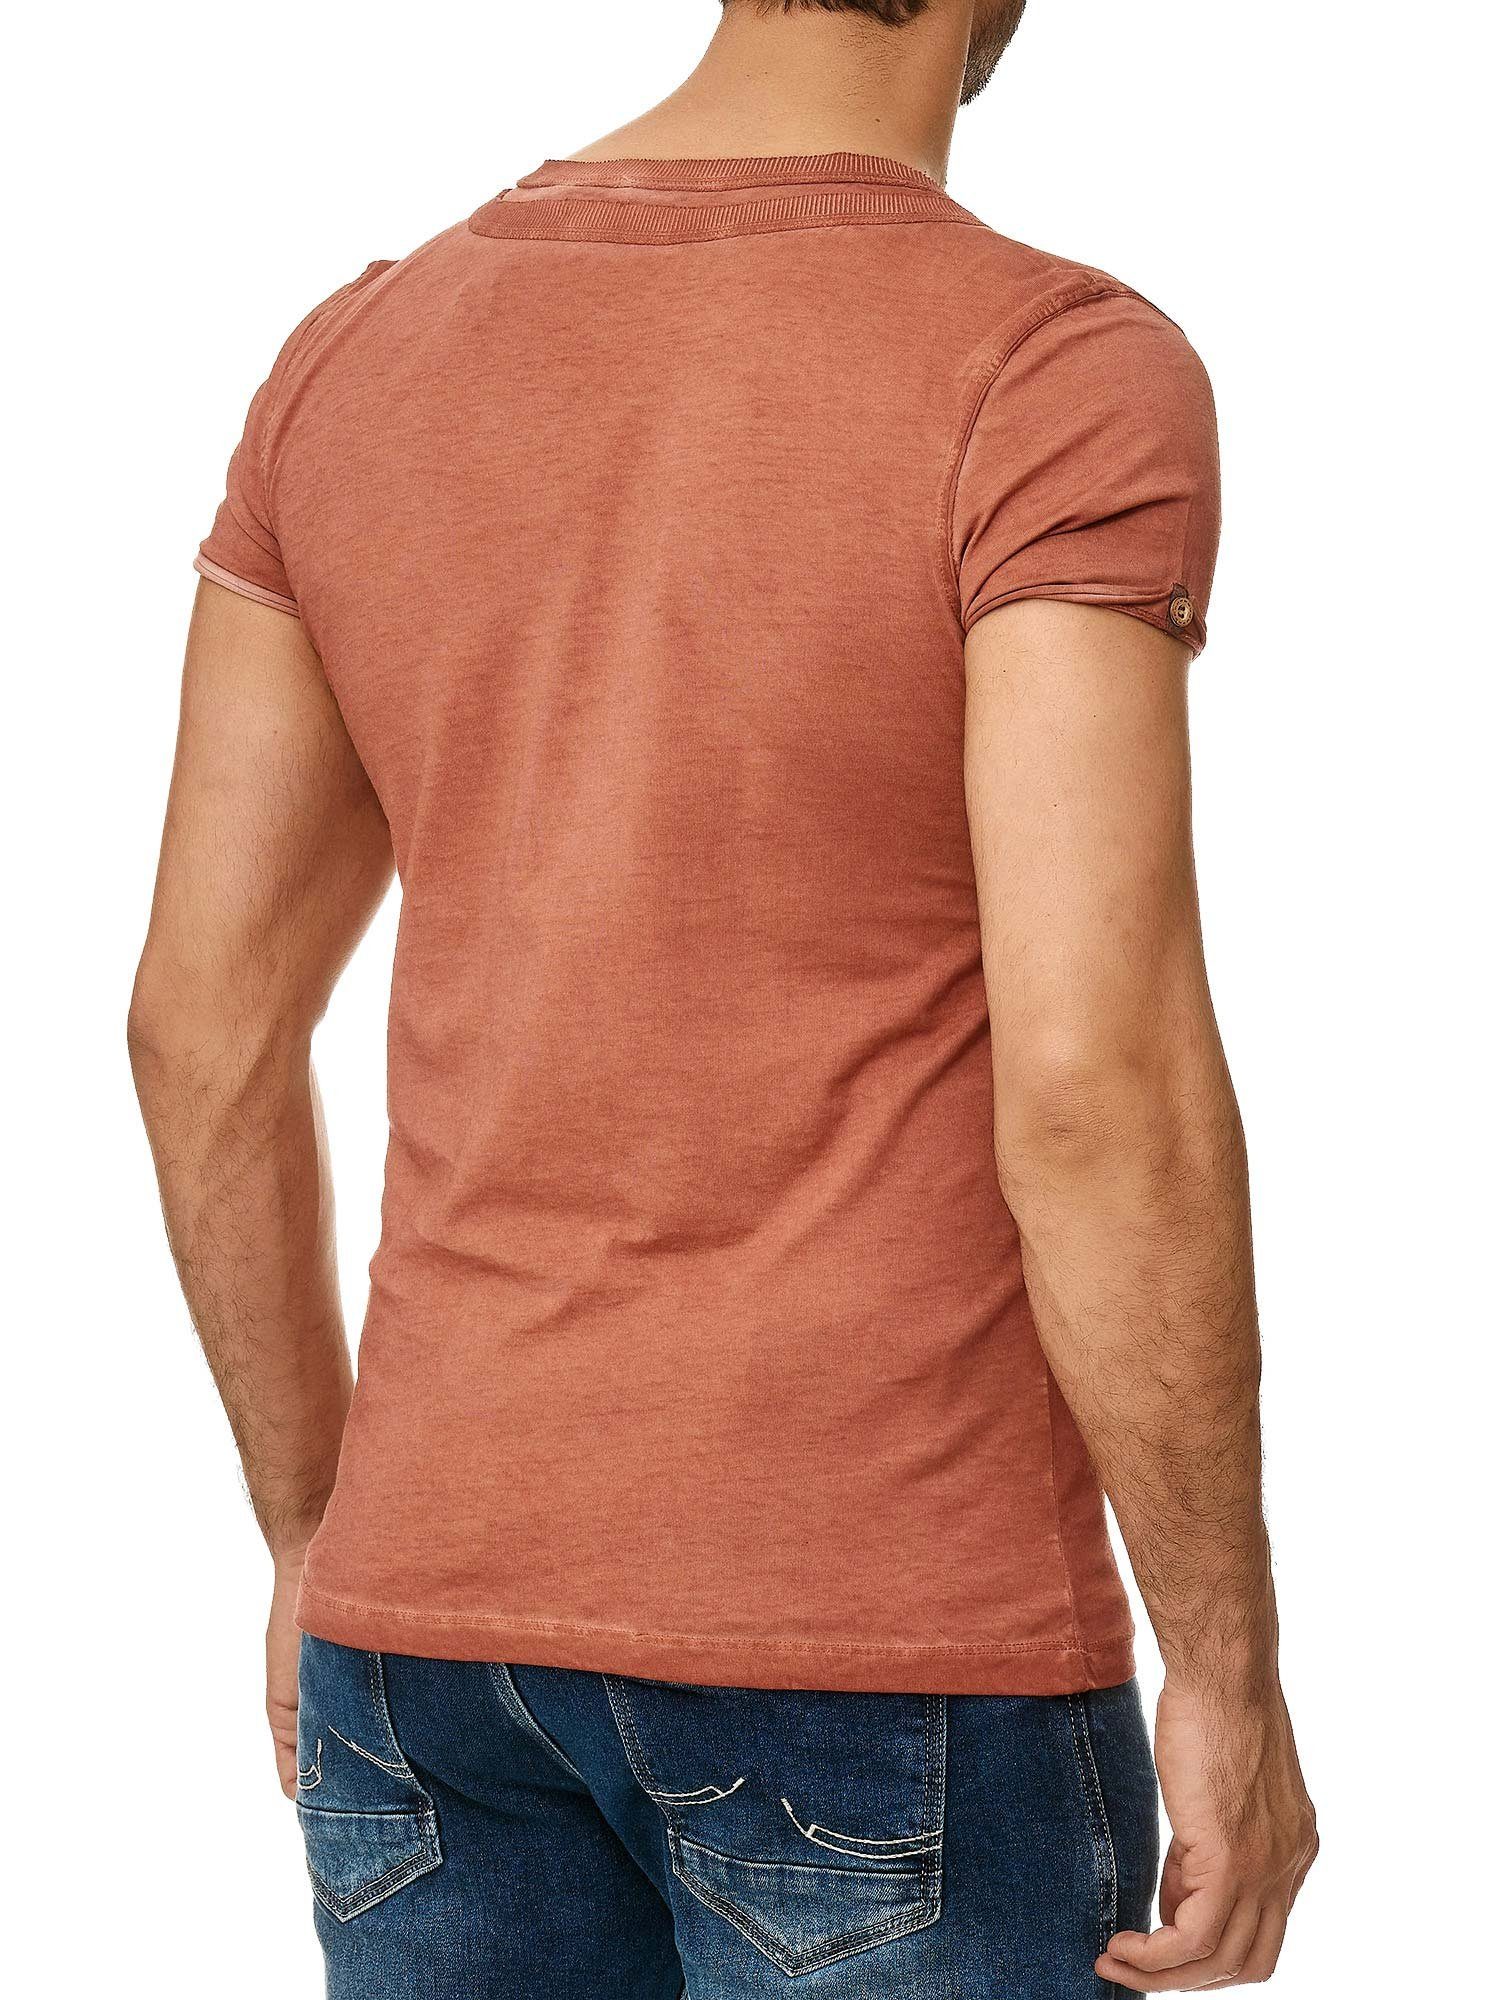 Tazzio T-Shirt Knopfleiste Kragen der und in Ölwaschung an bordeaux stylischem Schulter 4022 trendiger mit